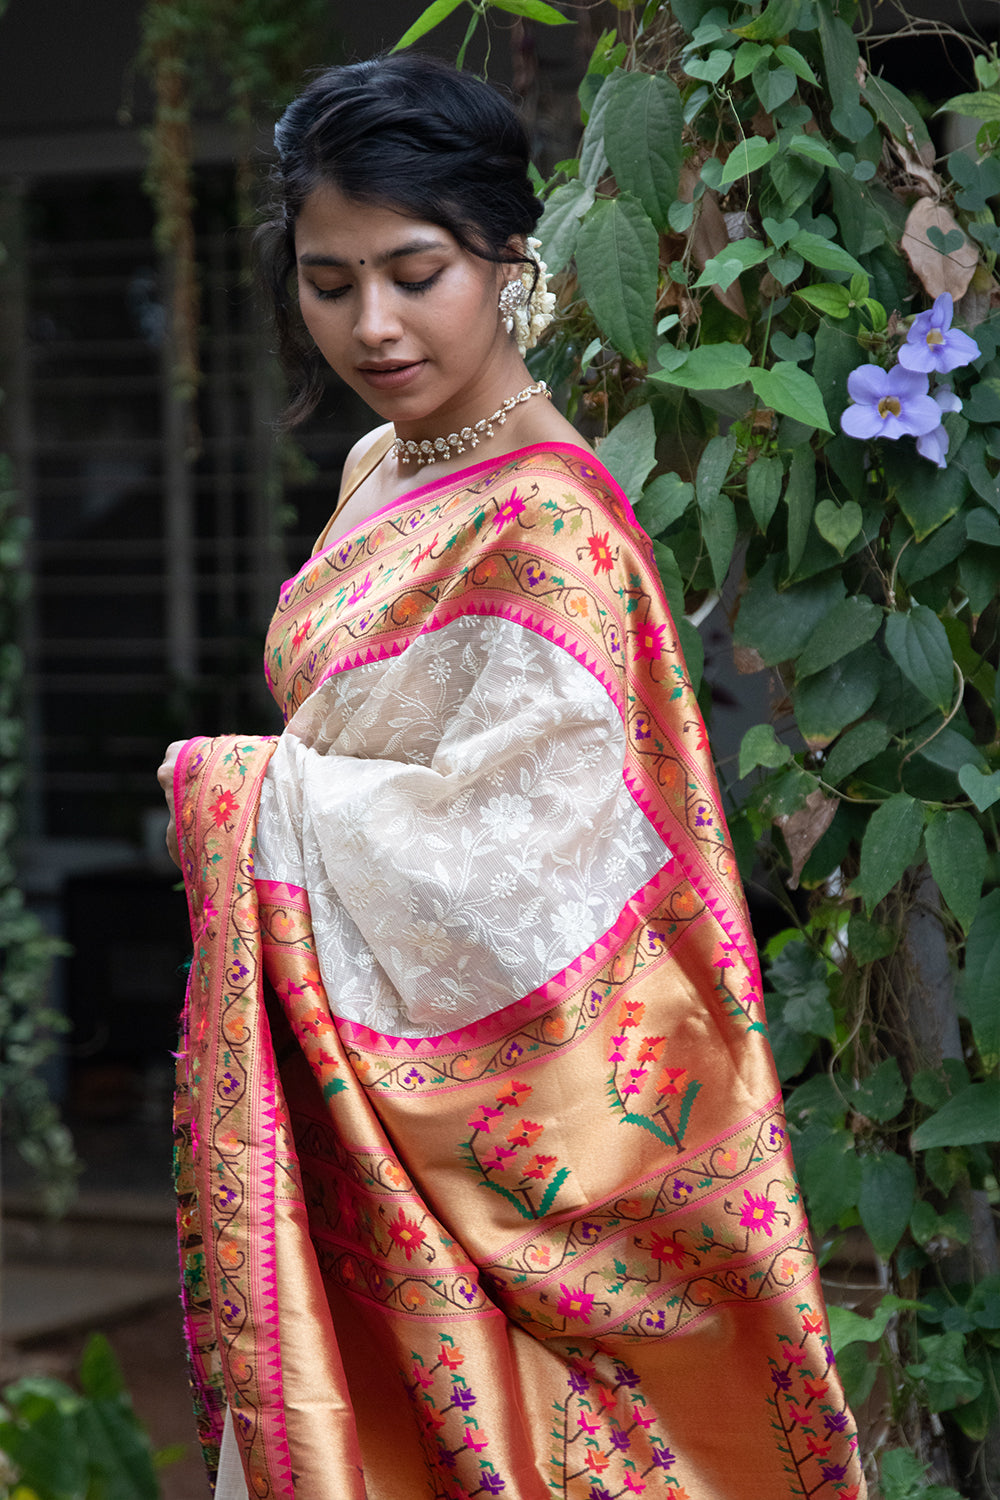 Creamy white embroidery floral motif Tussar Kora Silk saree